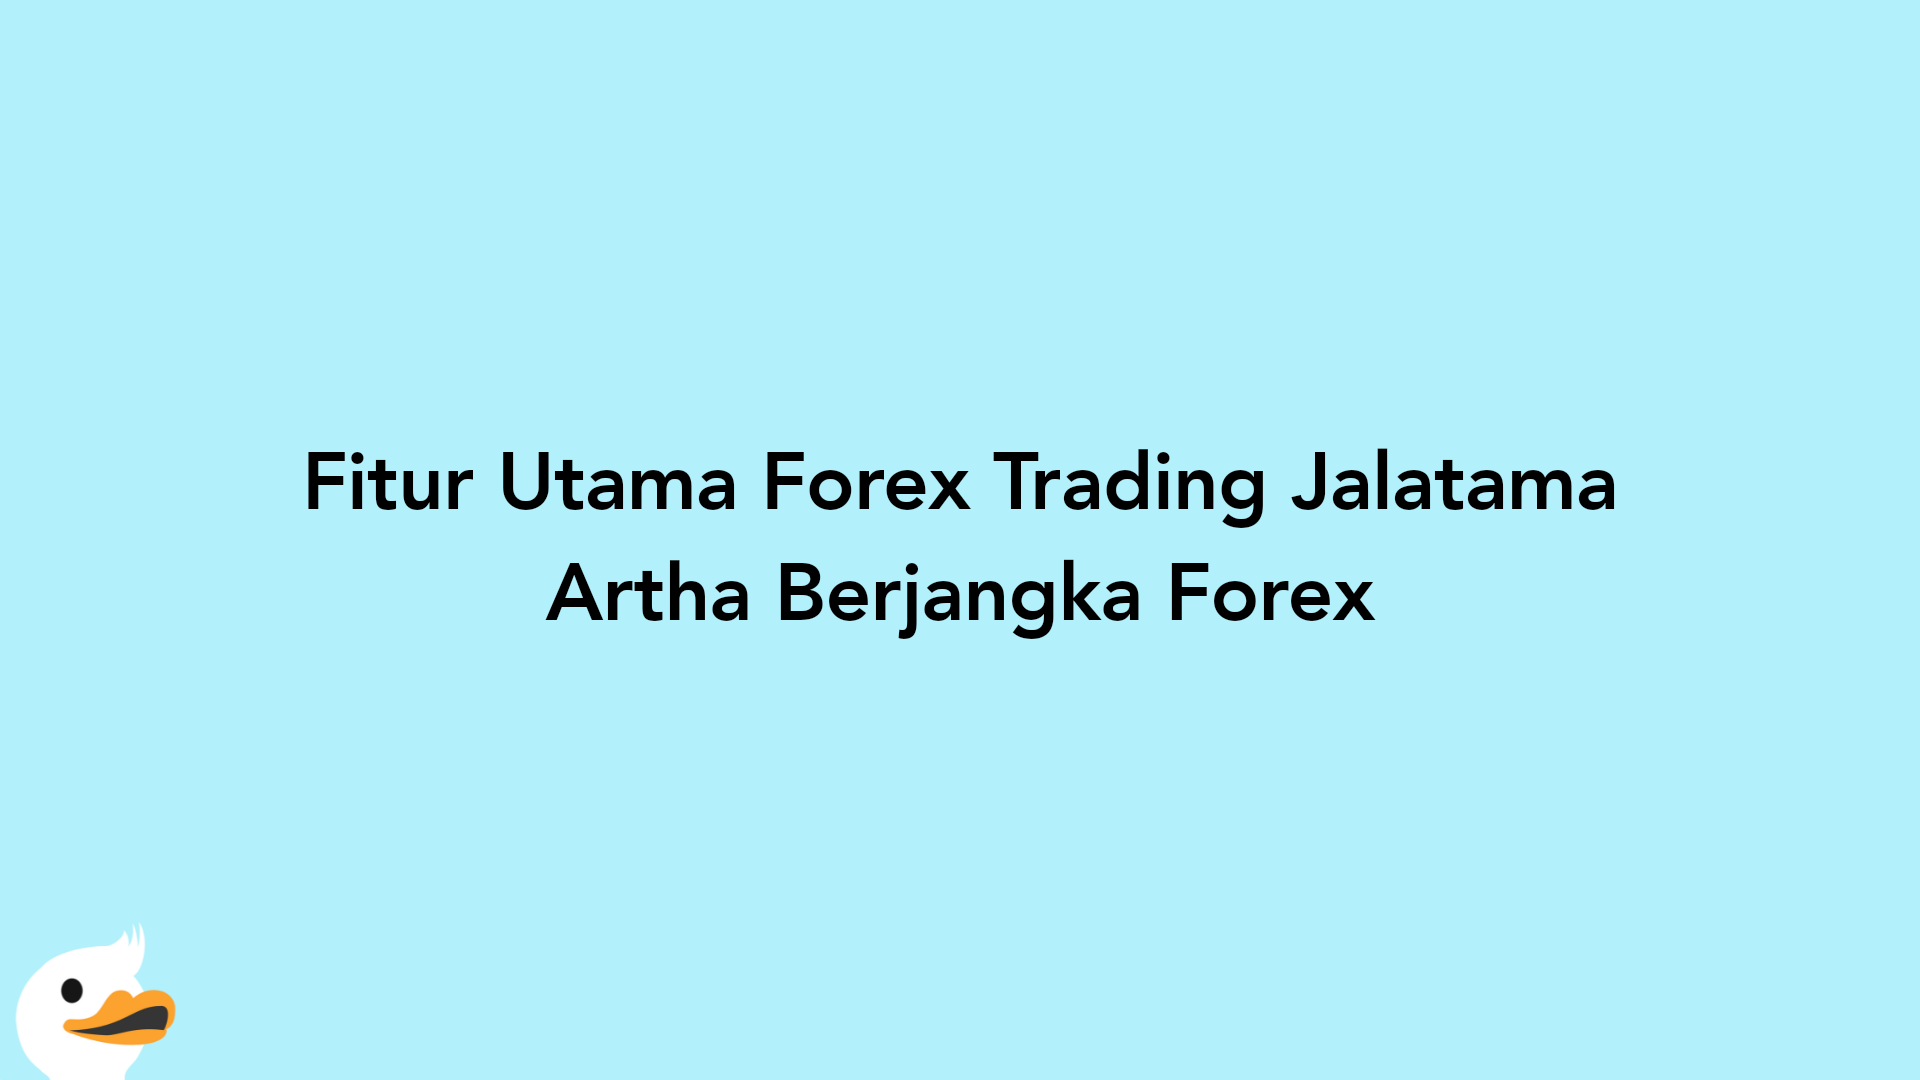 Fitur Utama Forex Trading Jalatama Artha Berjangka Forex